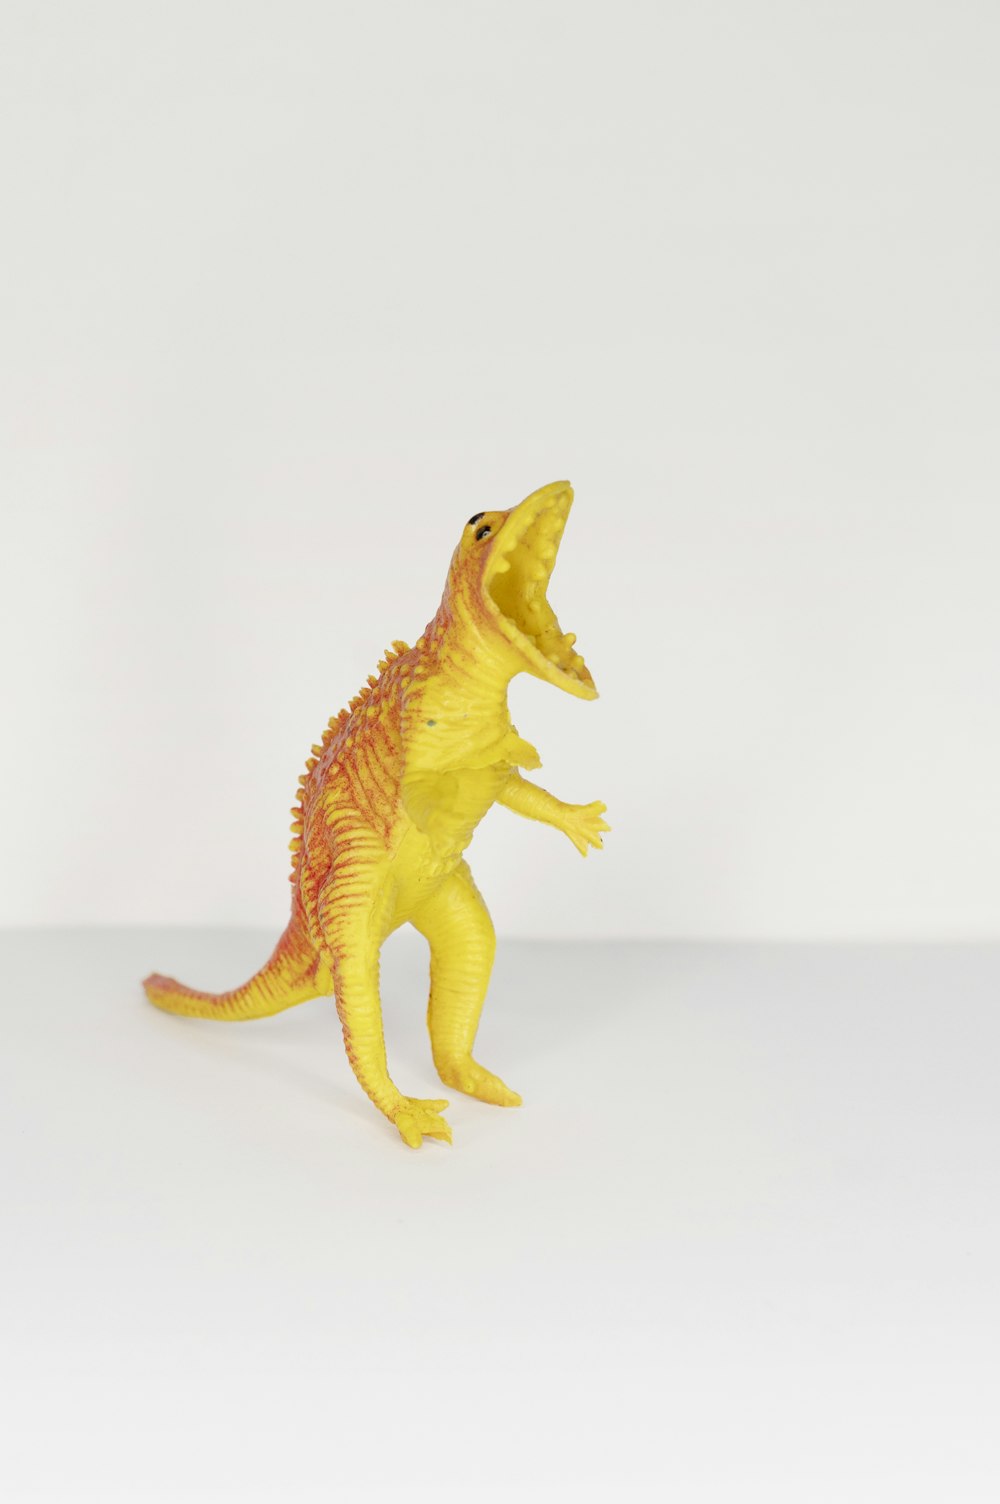 노란색과 주황색 공룡 장난감 사진 – Unsplash의 무료 황색 이미지